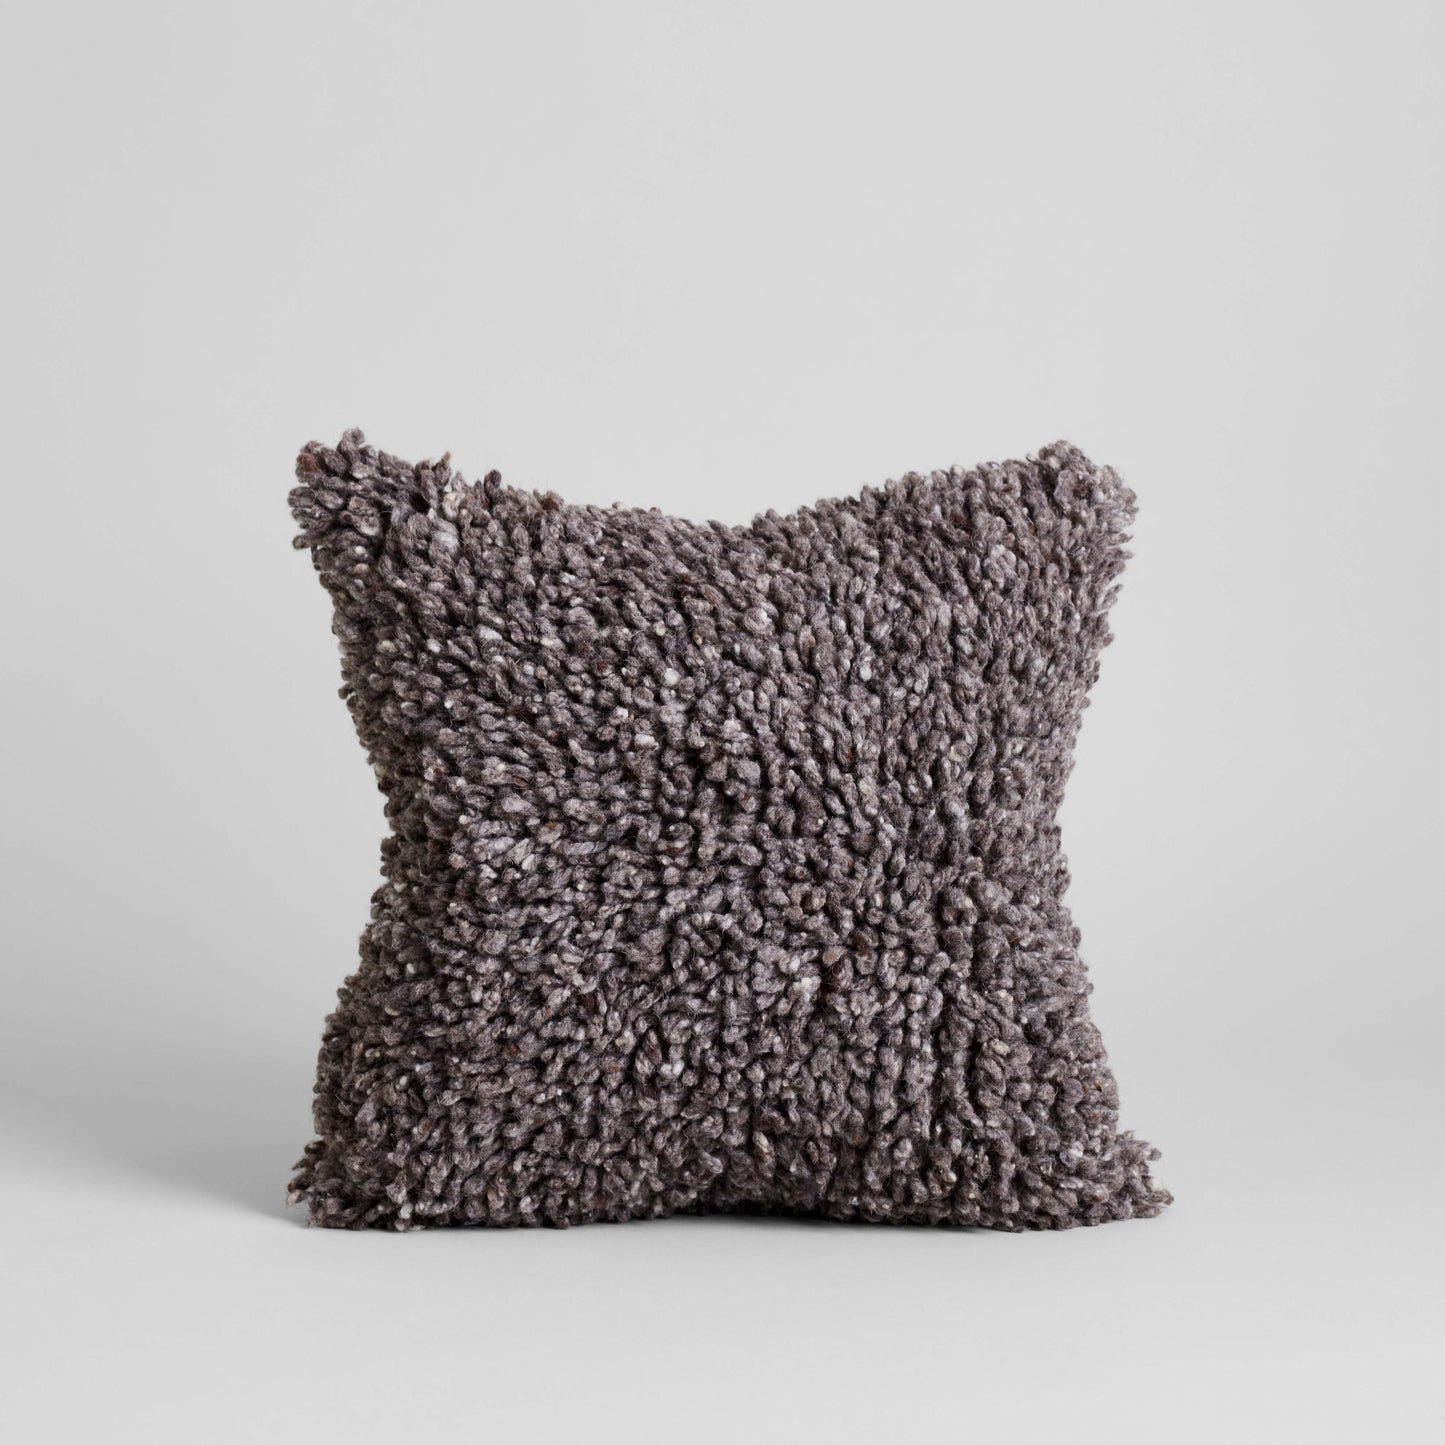 Bloomist Pillows Driftwood / Cover Only Handmade Wool Shag Pillow, 18x18